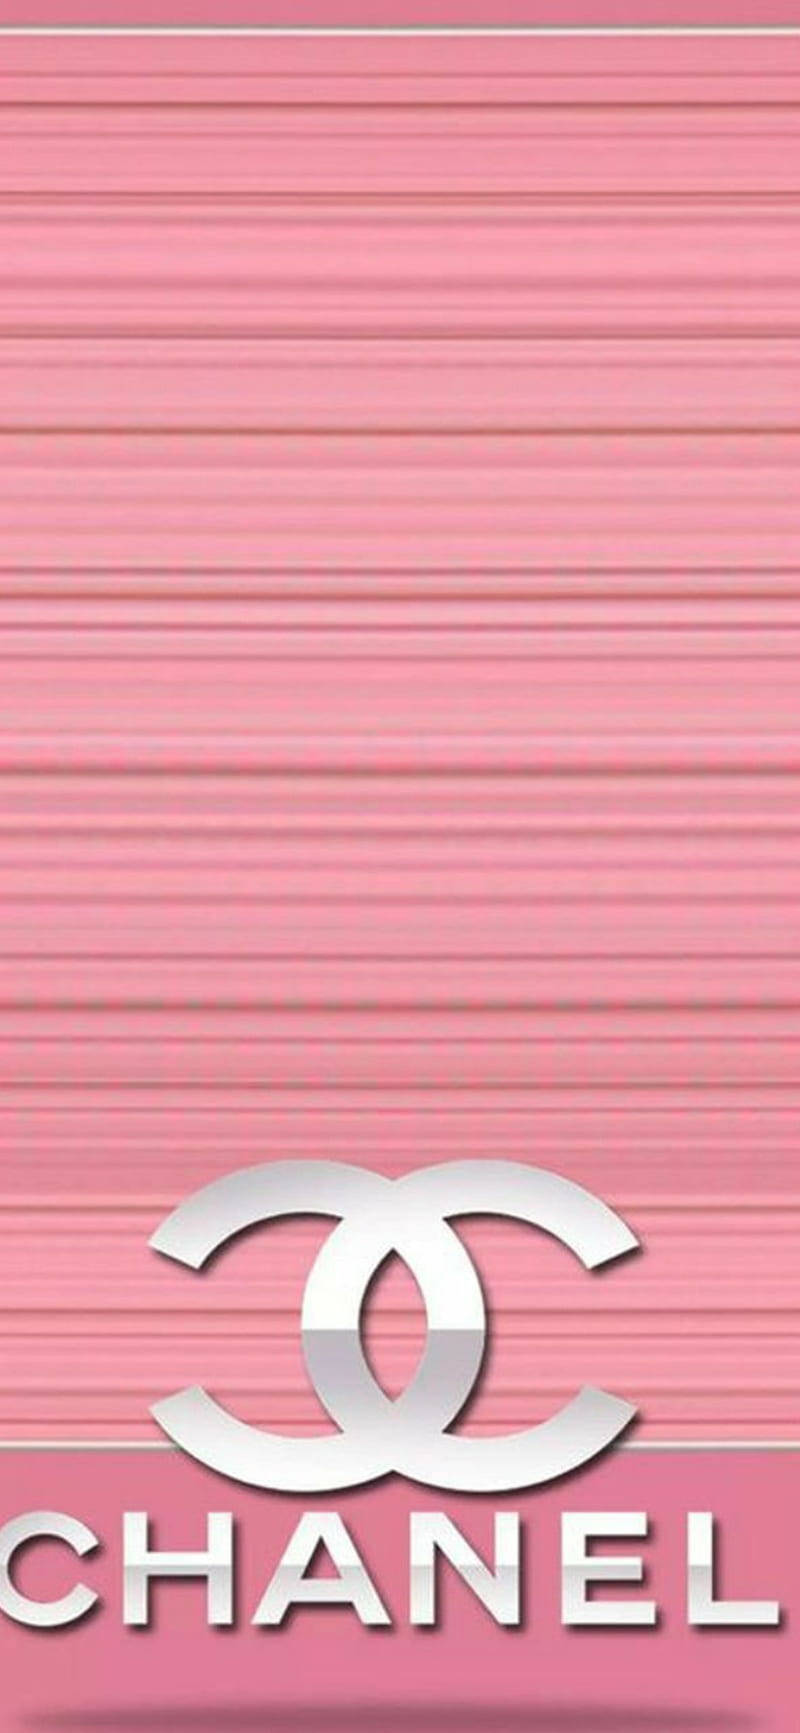 Bildwunderschönes Pinkes Chanel-logo Wallpaper